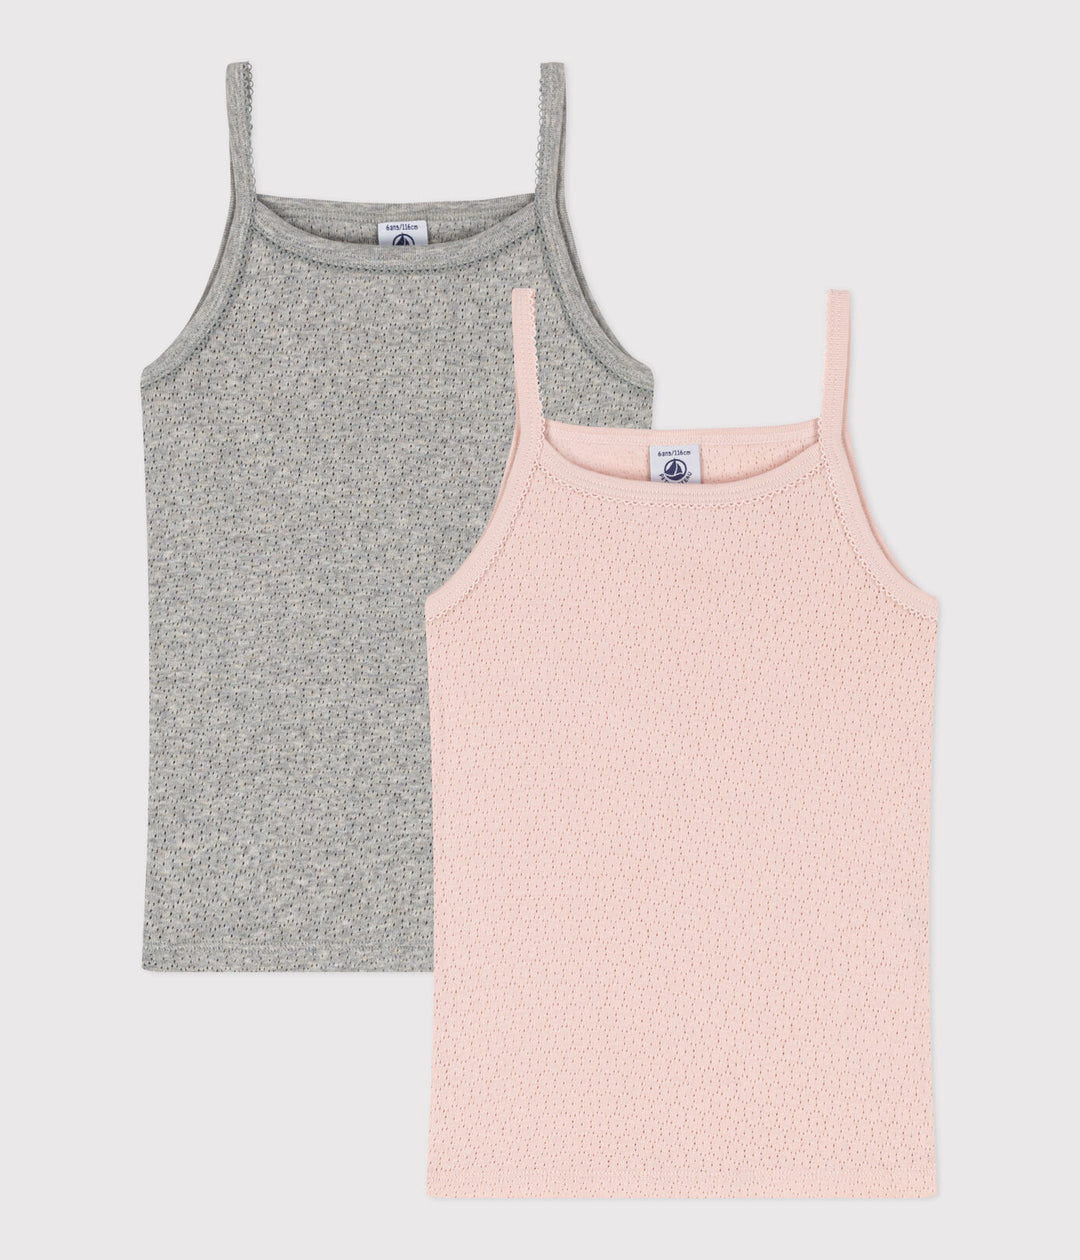 Onderhemd Bretel Pink / Grey Variante 1 (2pack)